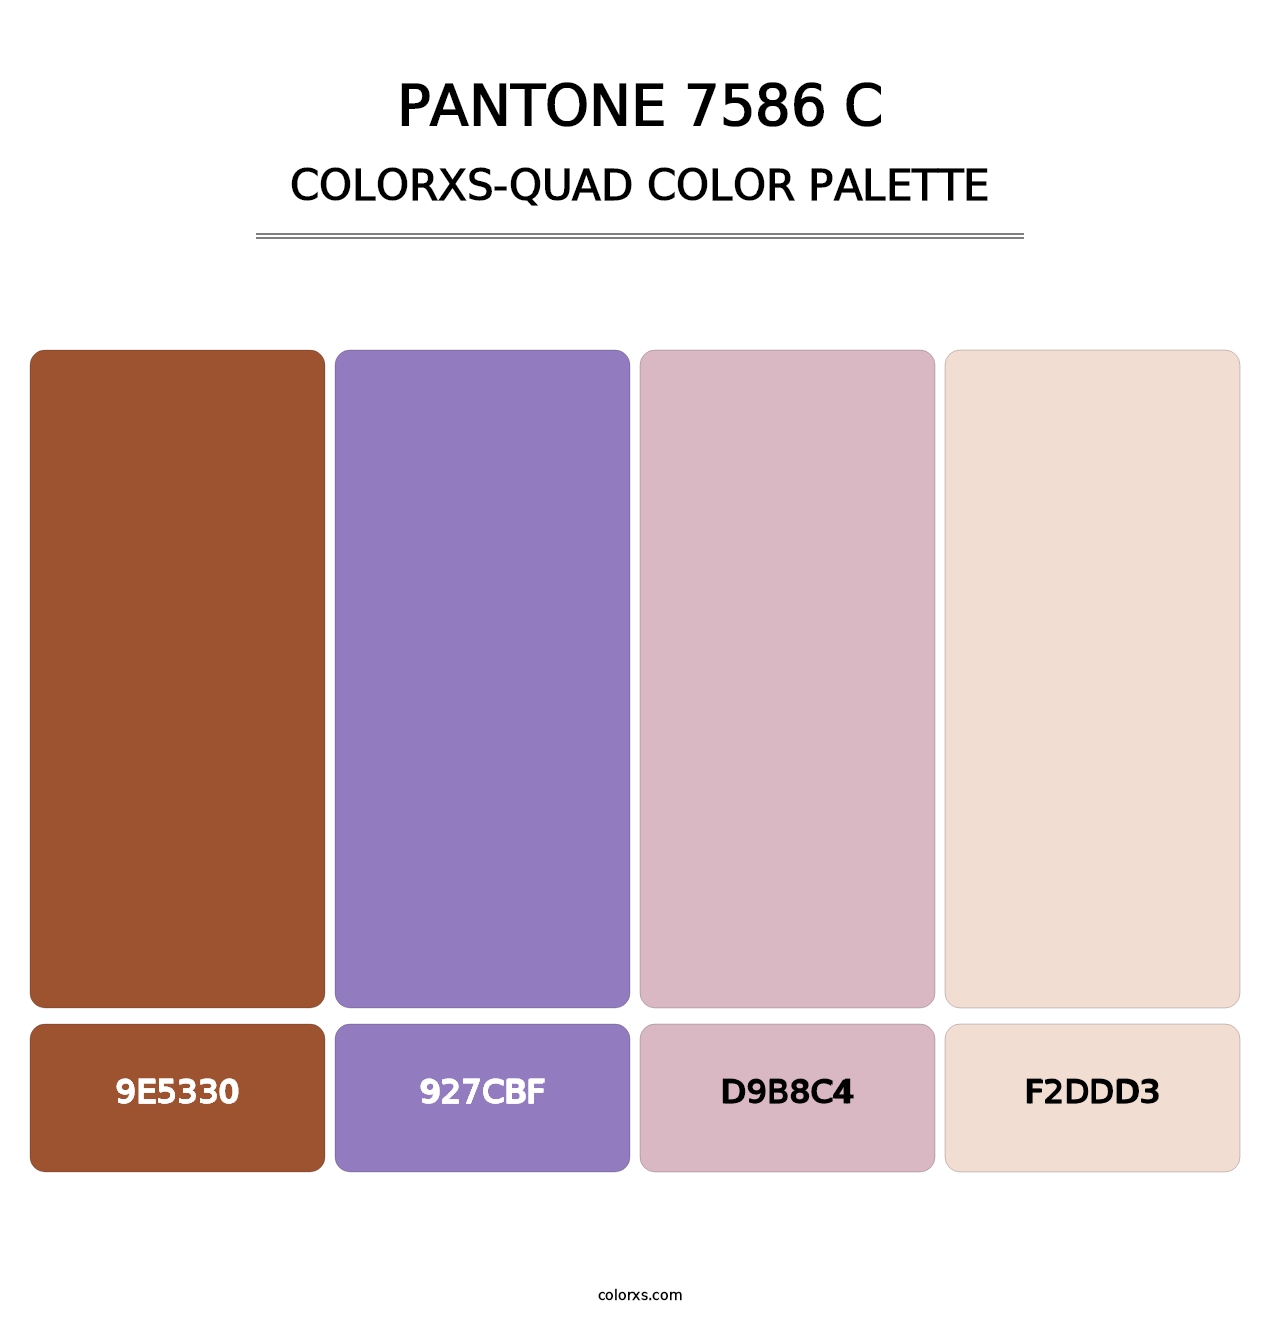 PANTONE 7586 C - Colorxs Quad Palette